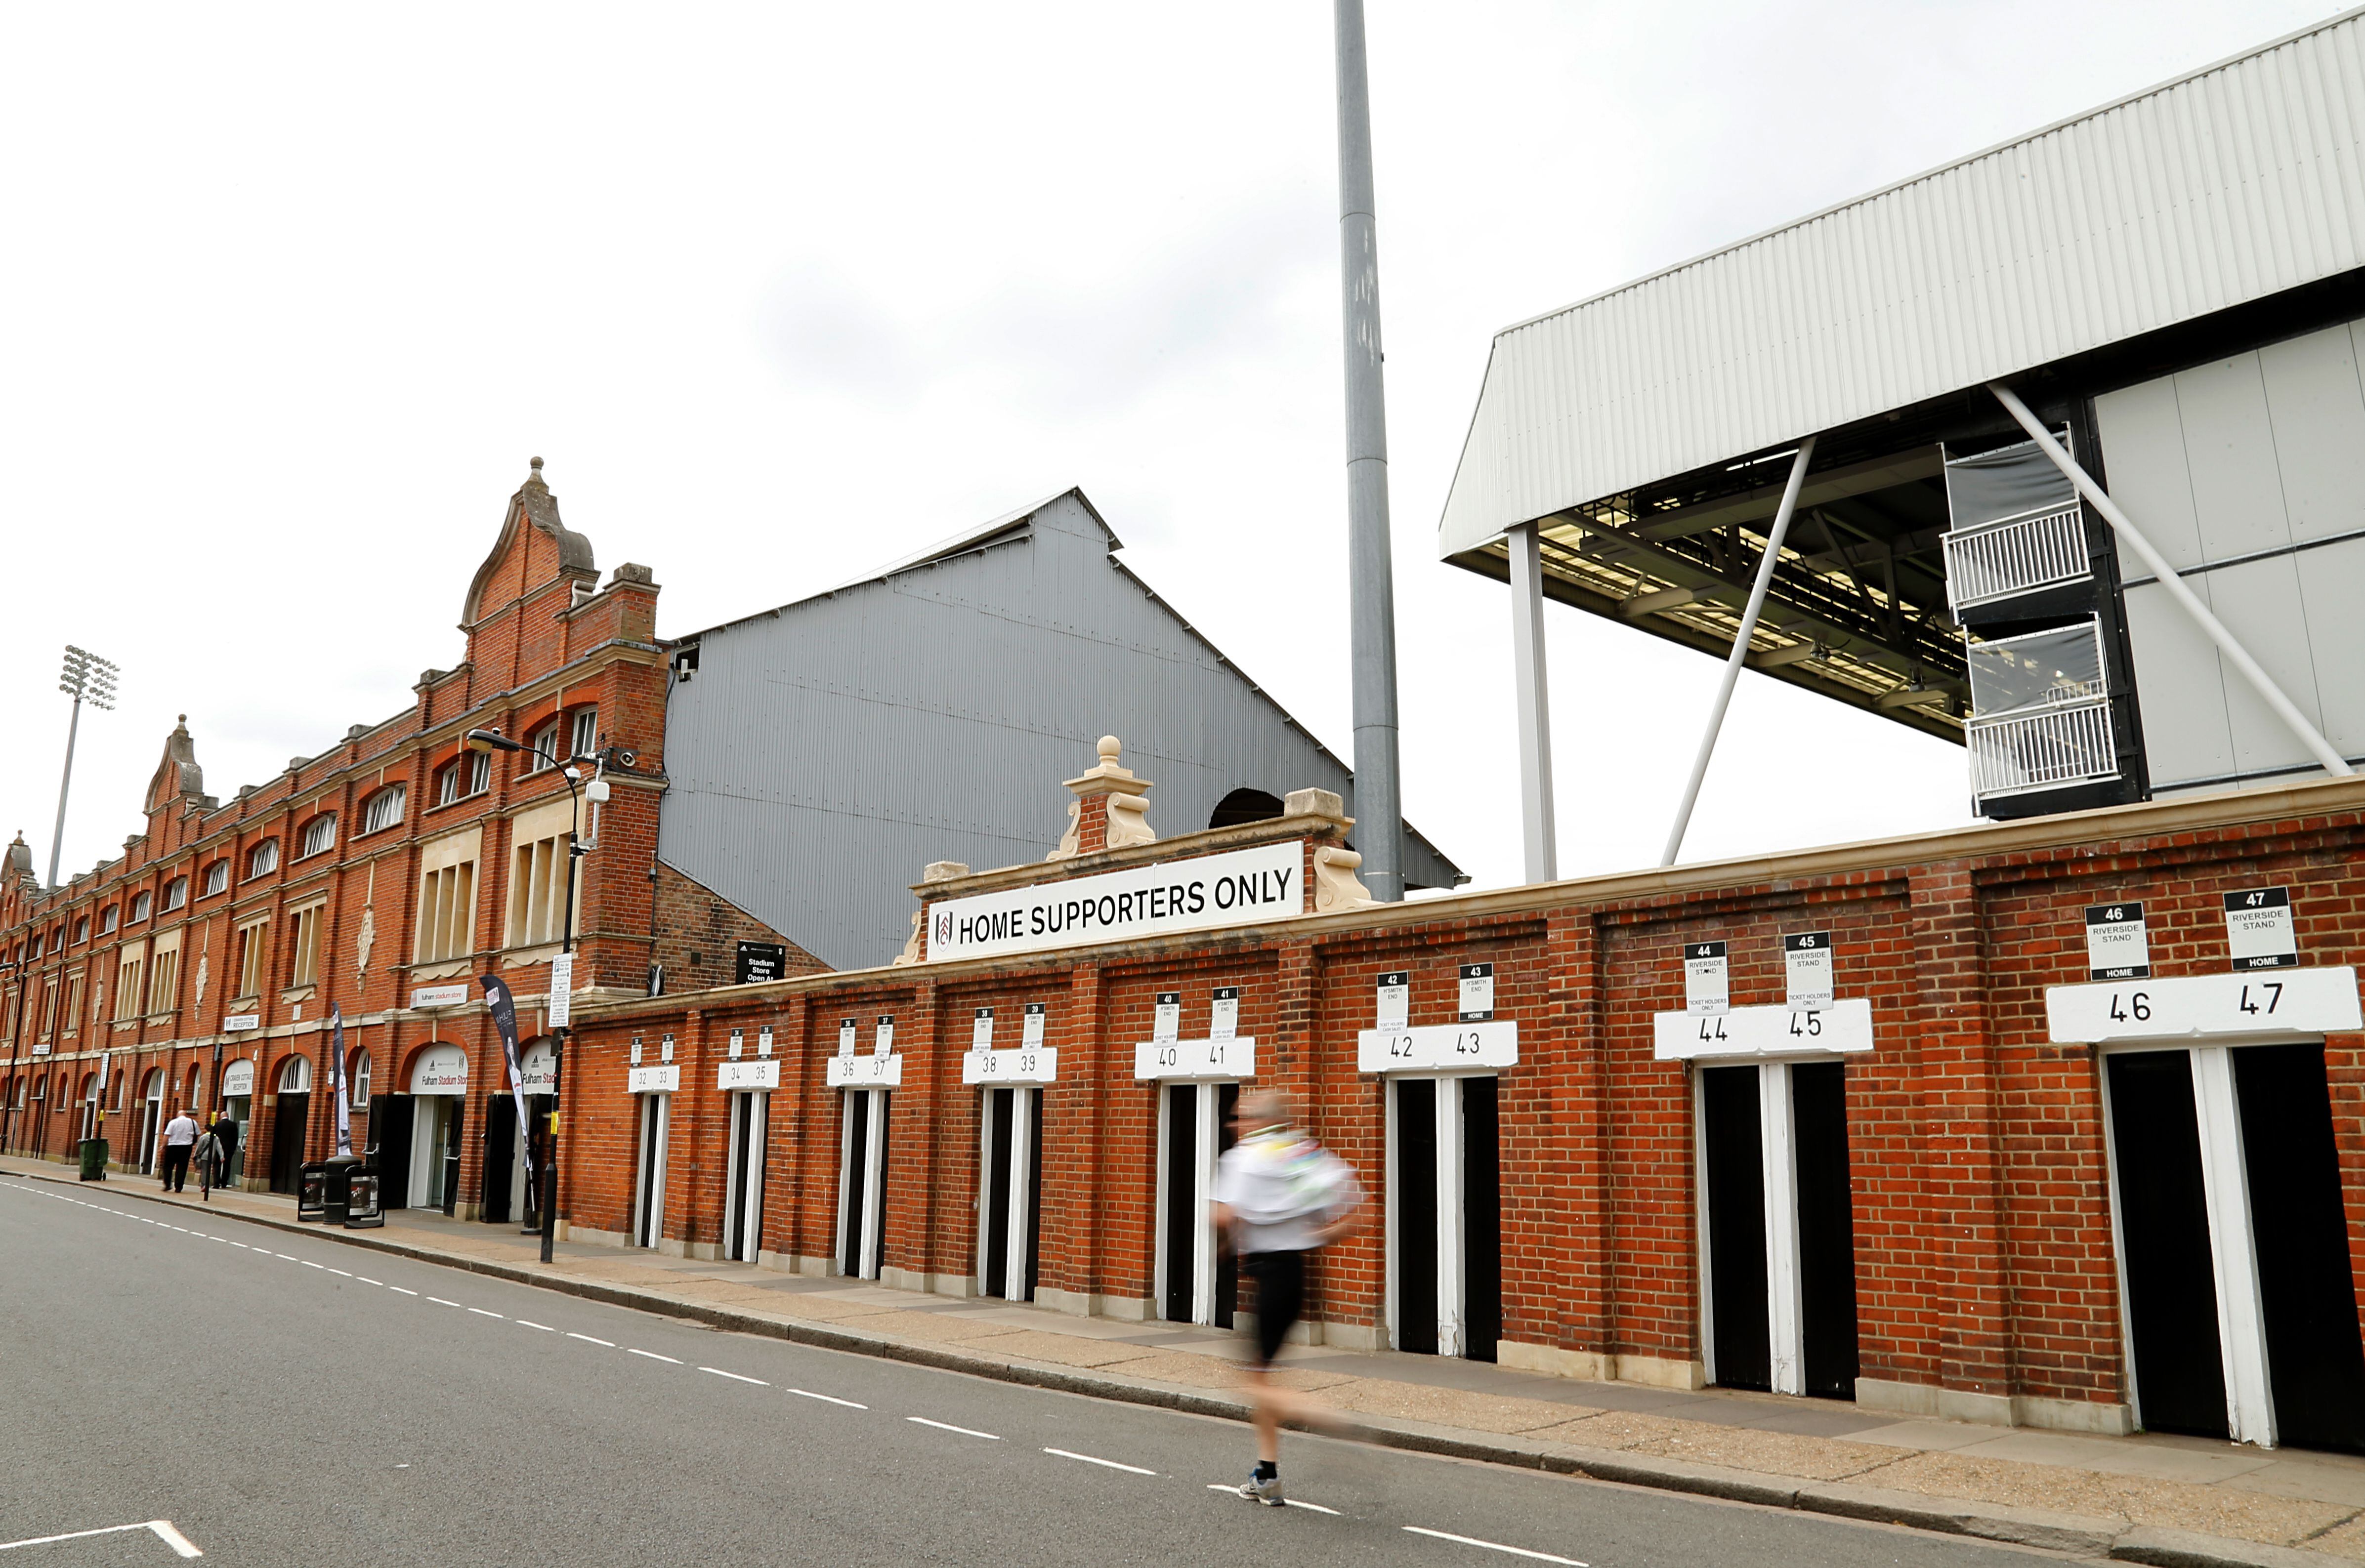 Vista general del Craven Cottage en la actualidad. Este estadio se encuentra en el barrio acaudalado de Fulham, Londres.